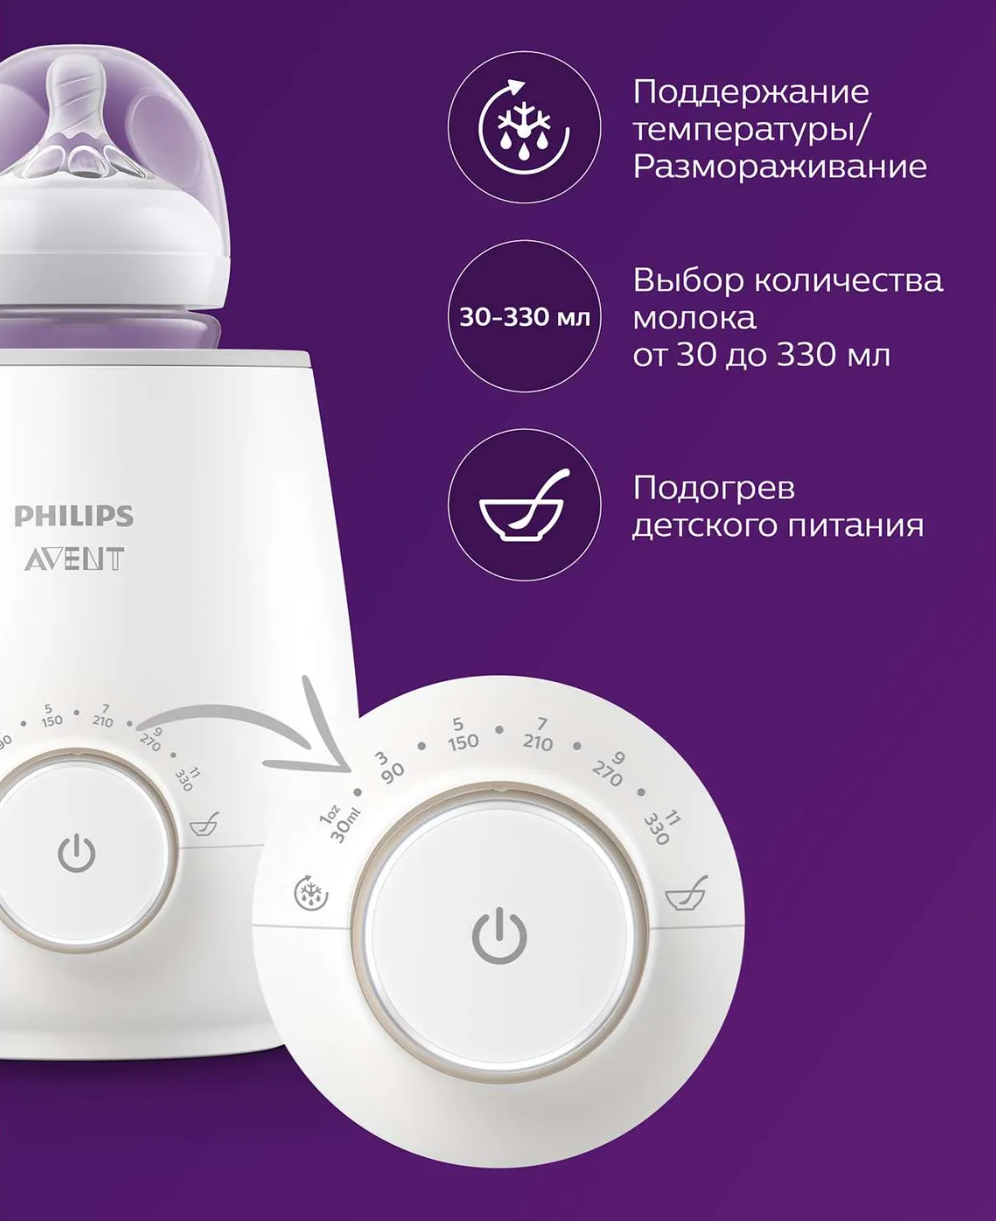 Avent Philips Подогреватель бутылочек для детского питания, SCF358/00, электрические, 1 шт.